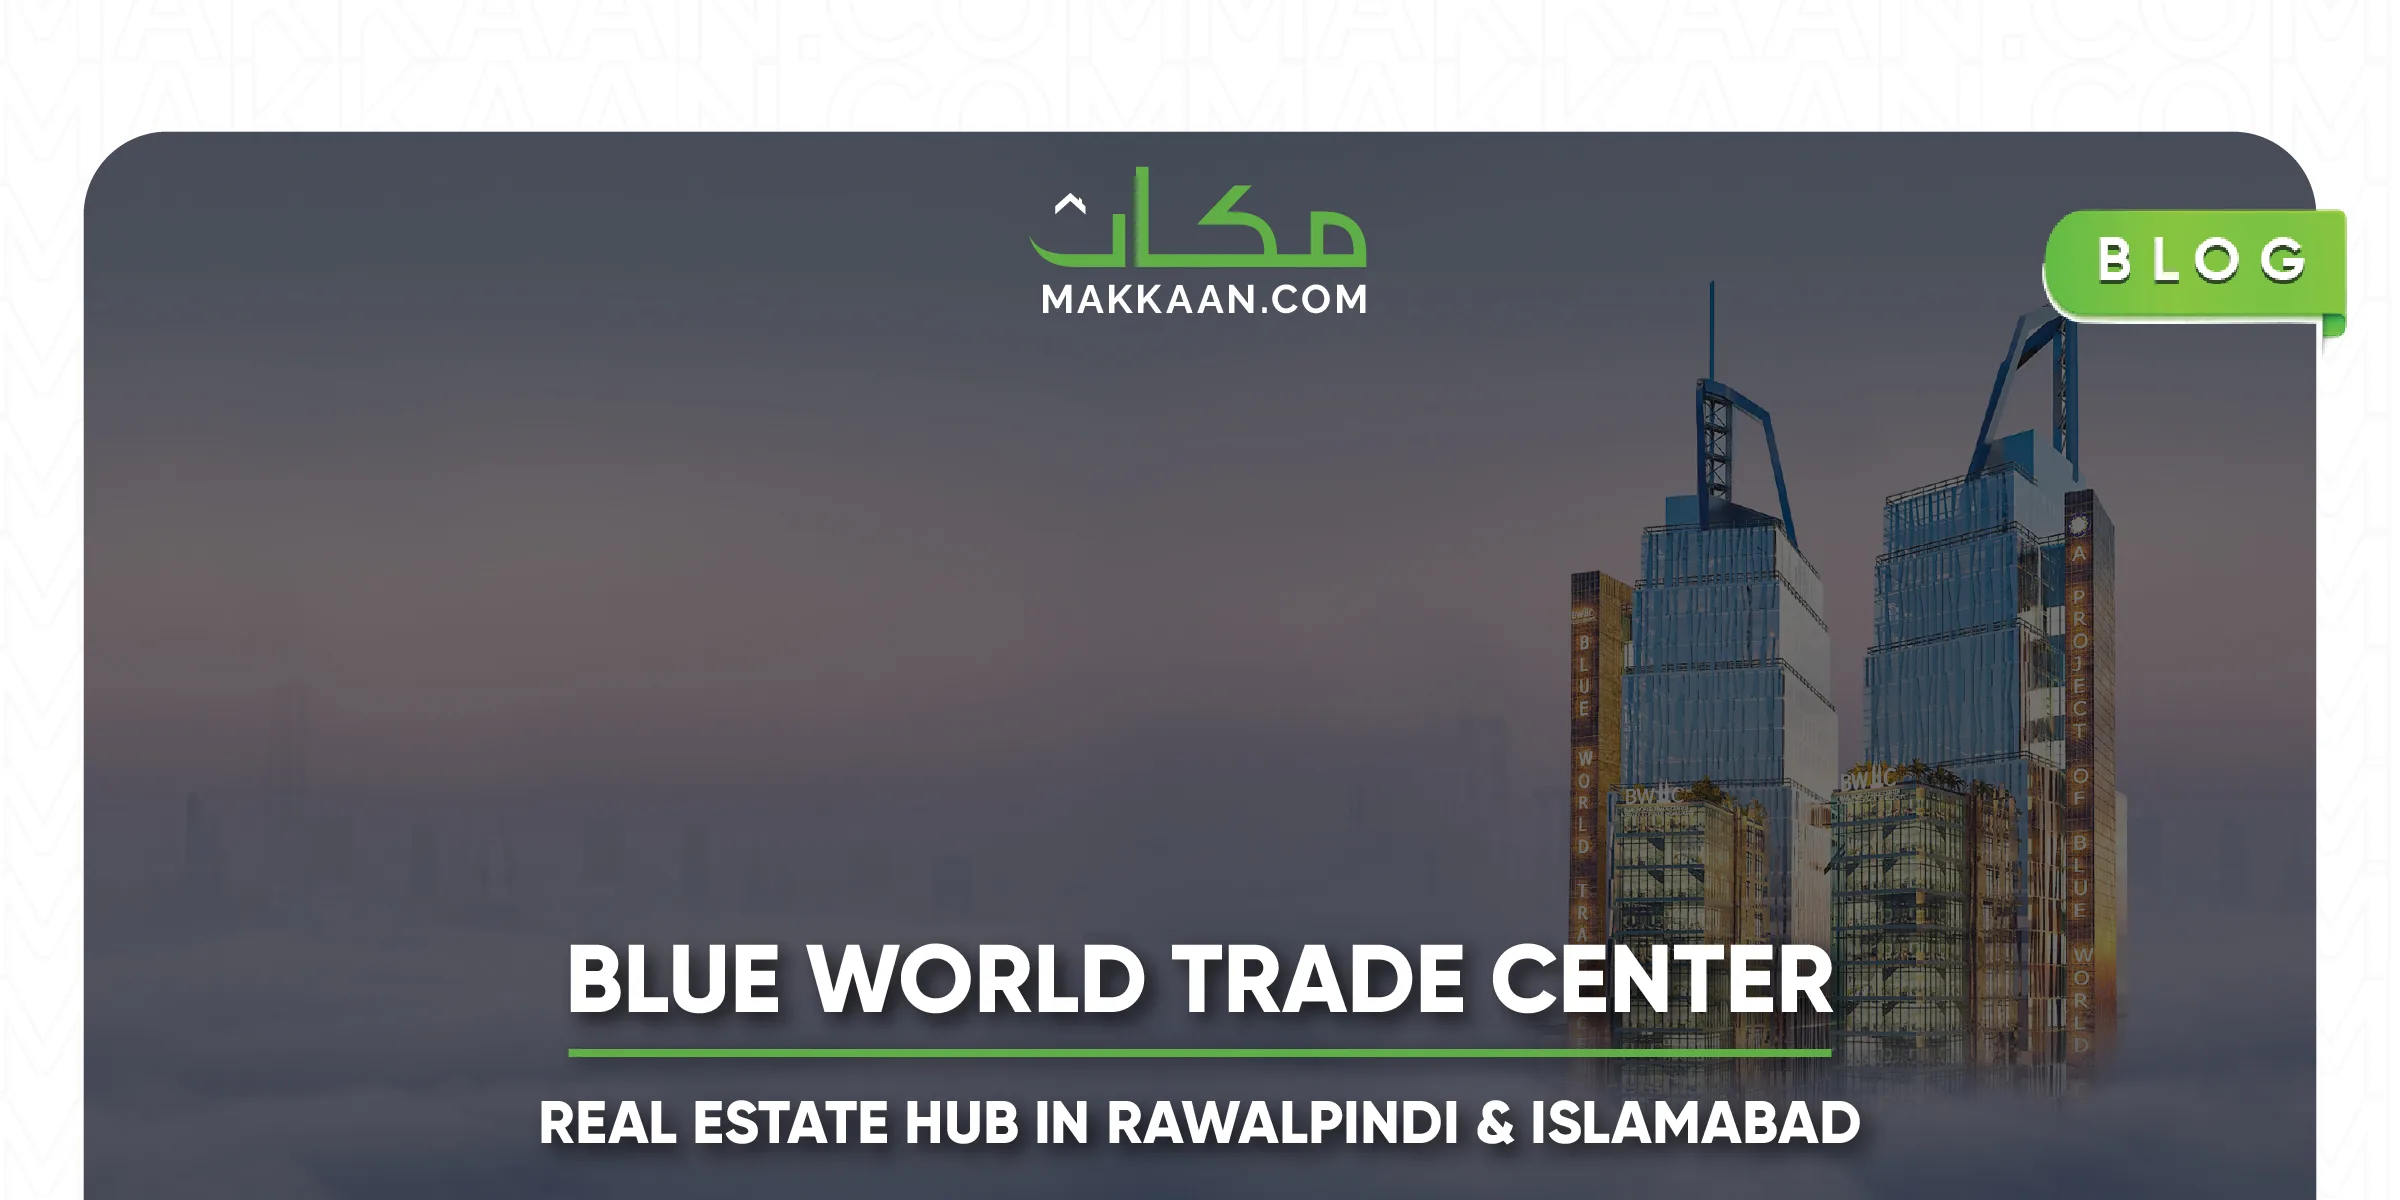 BWTC- A Real Estate Hub in Rawalpindi and Islamabad